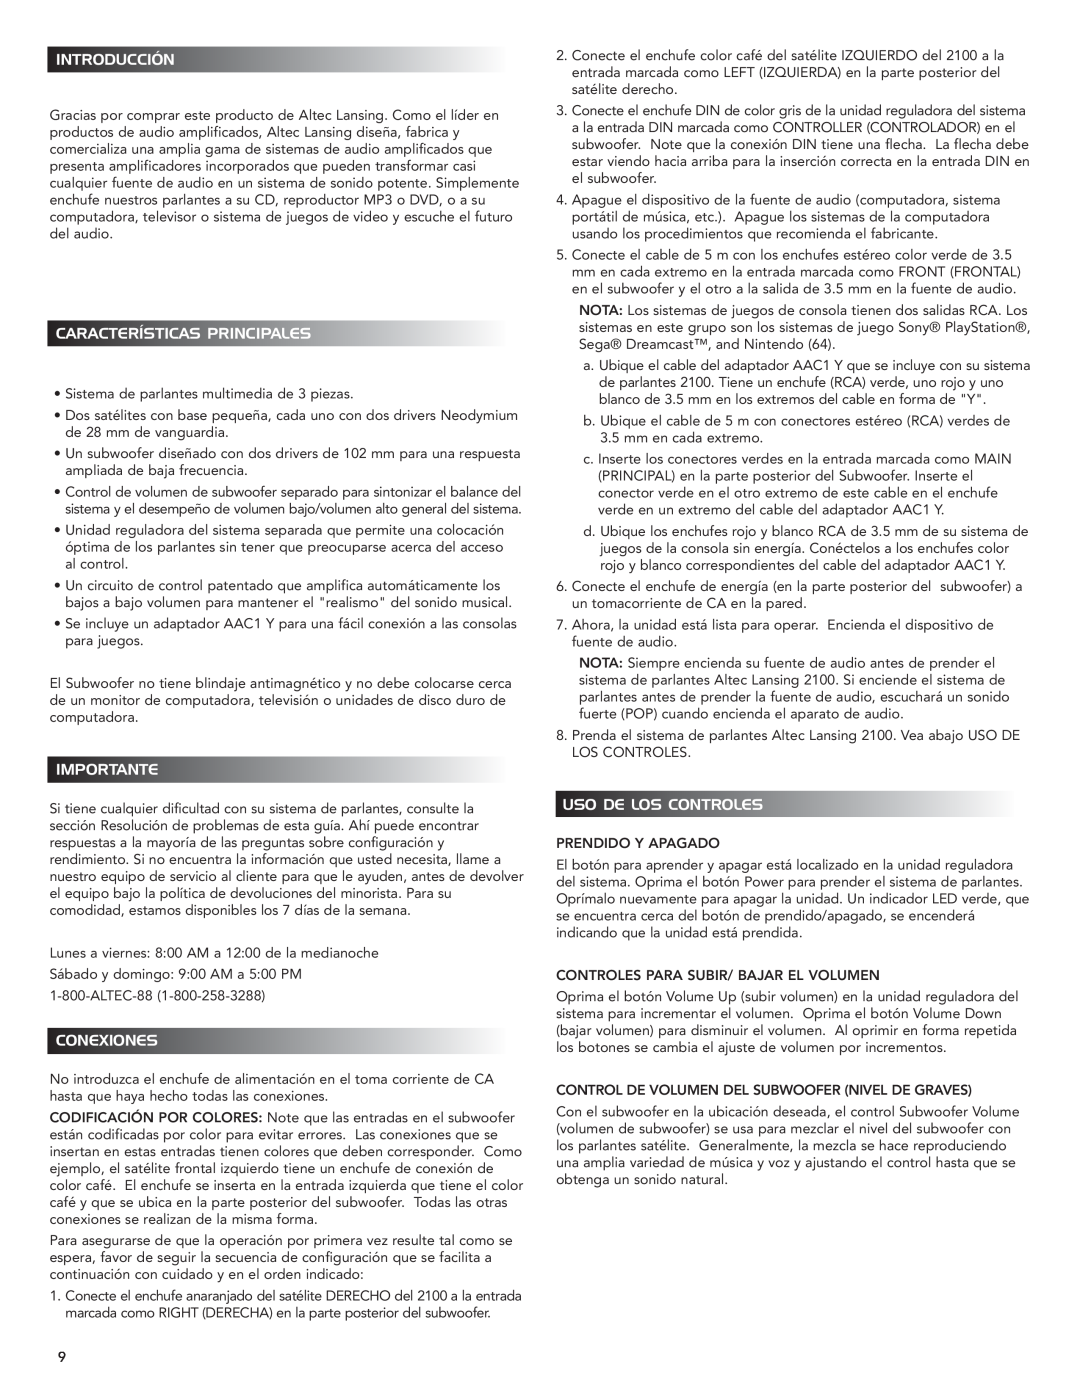 Altec Lansing 2100 manual Introducción, Características Principales, Importante, Conexiones, Uso De Los Controles 